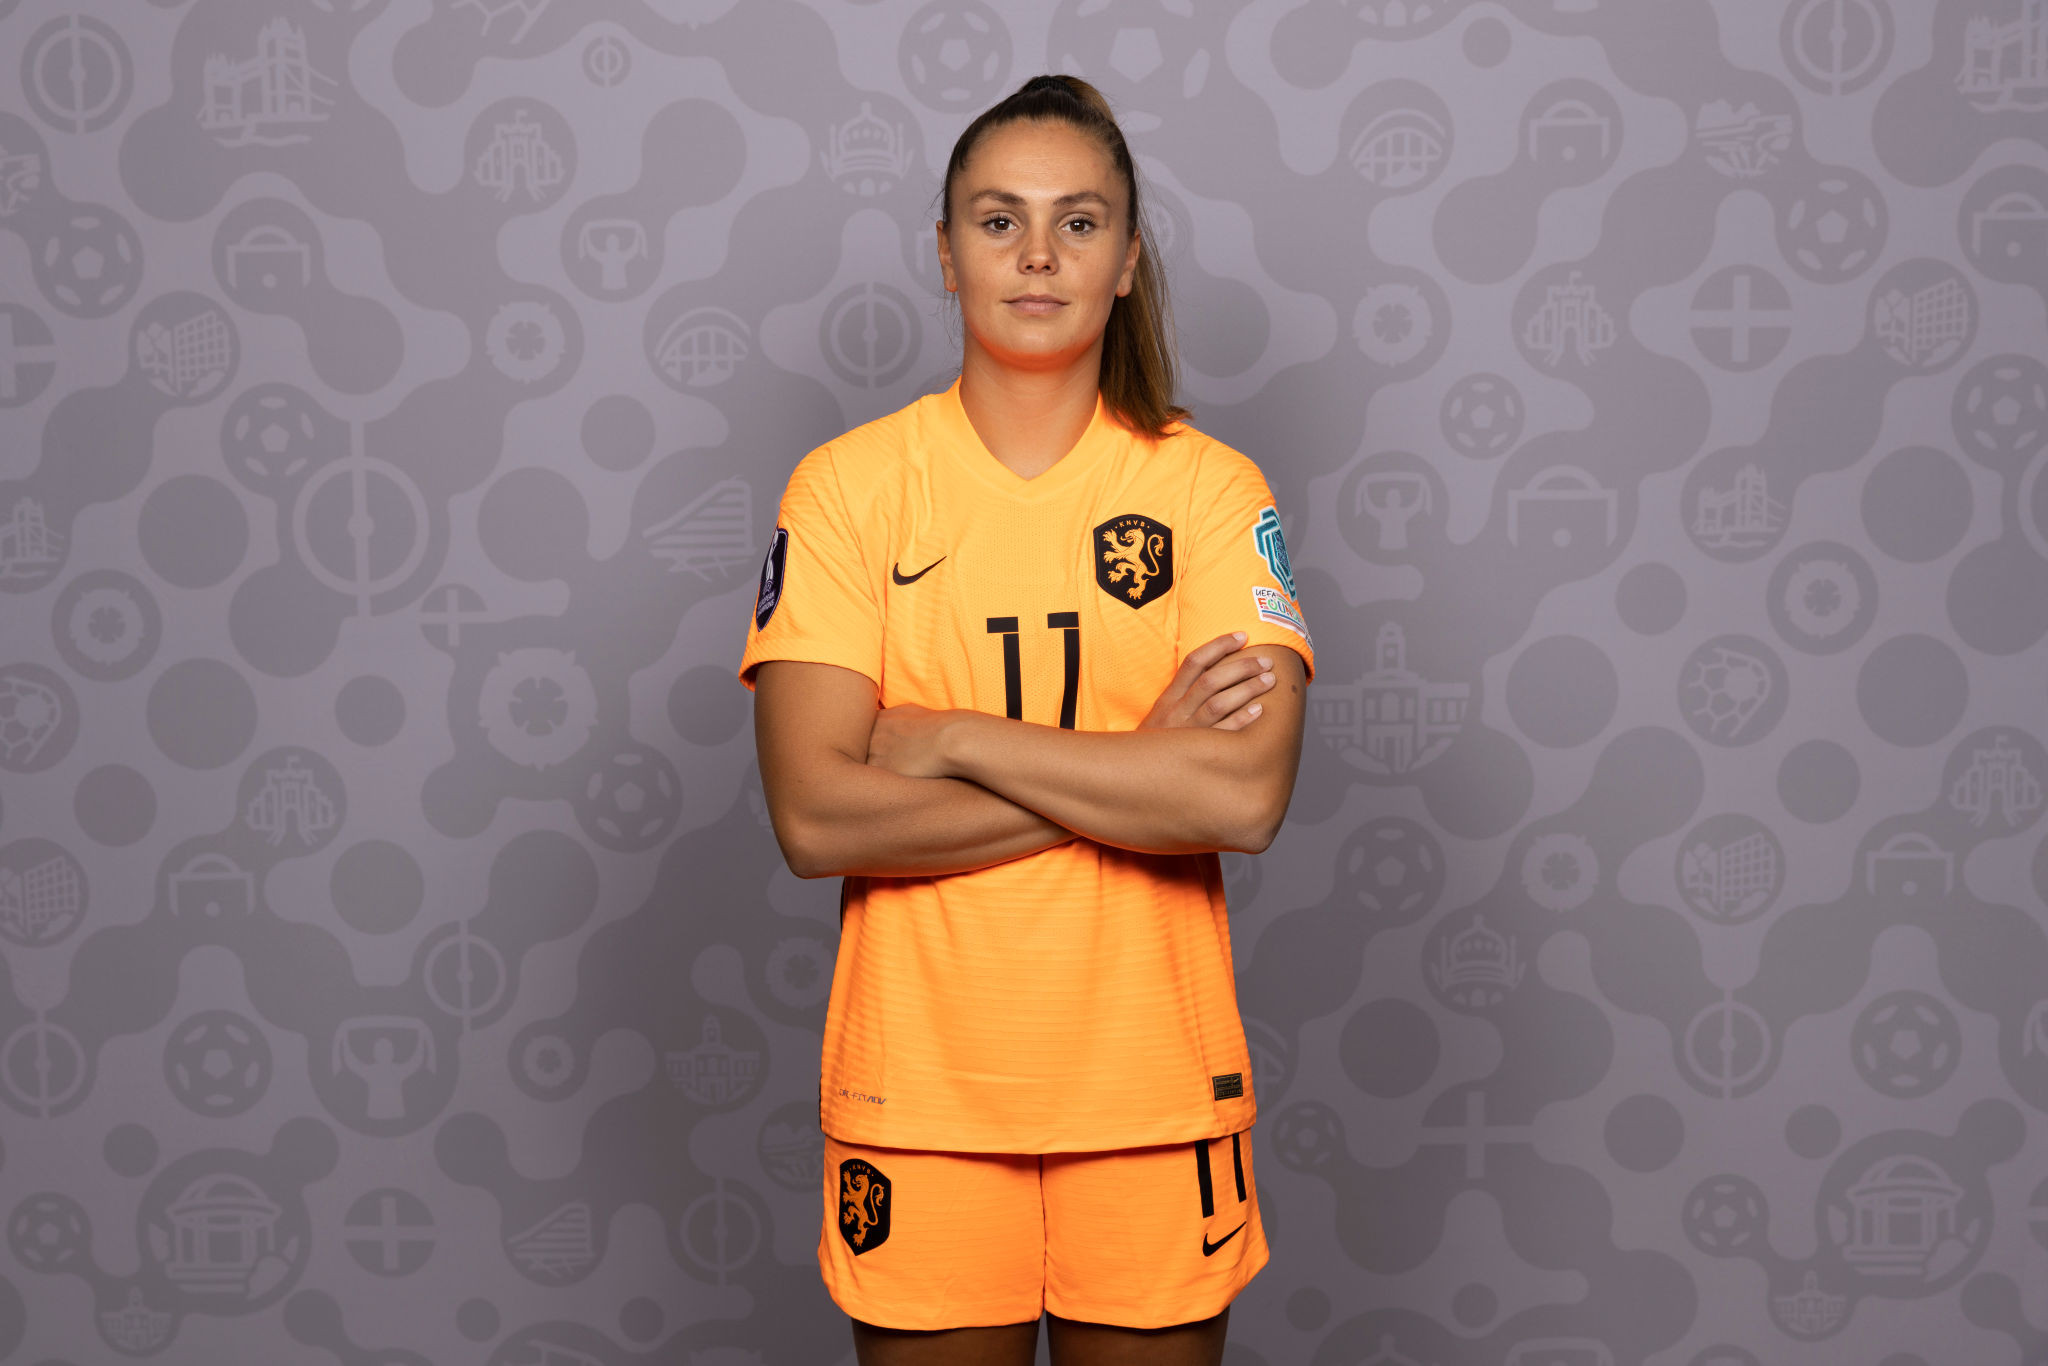 Soccer player Lieke Martens in a soccer uniform